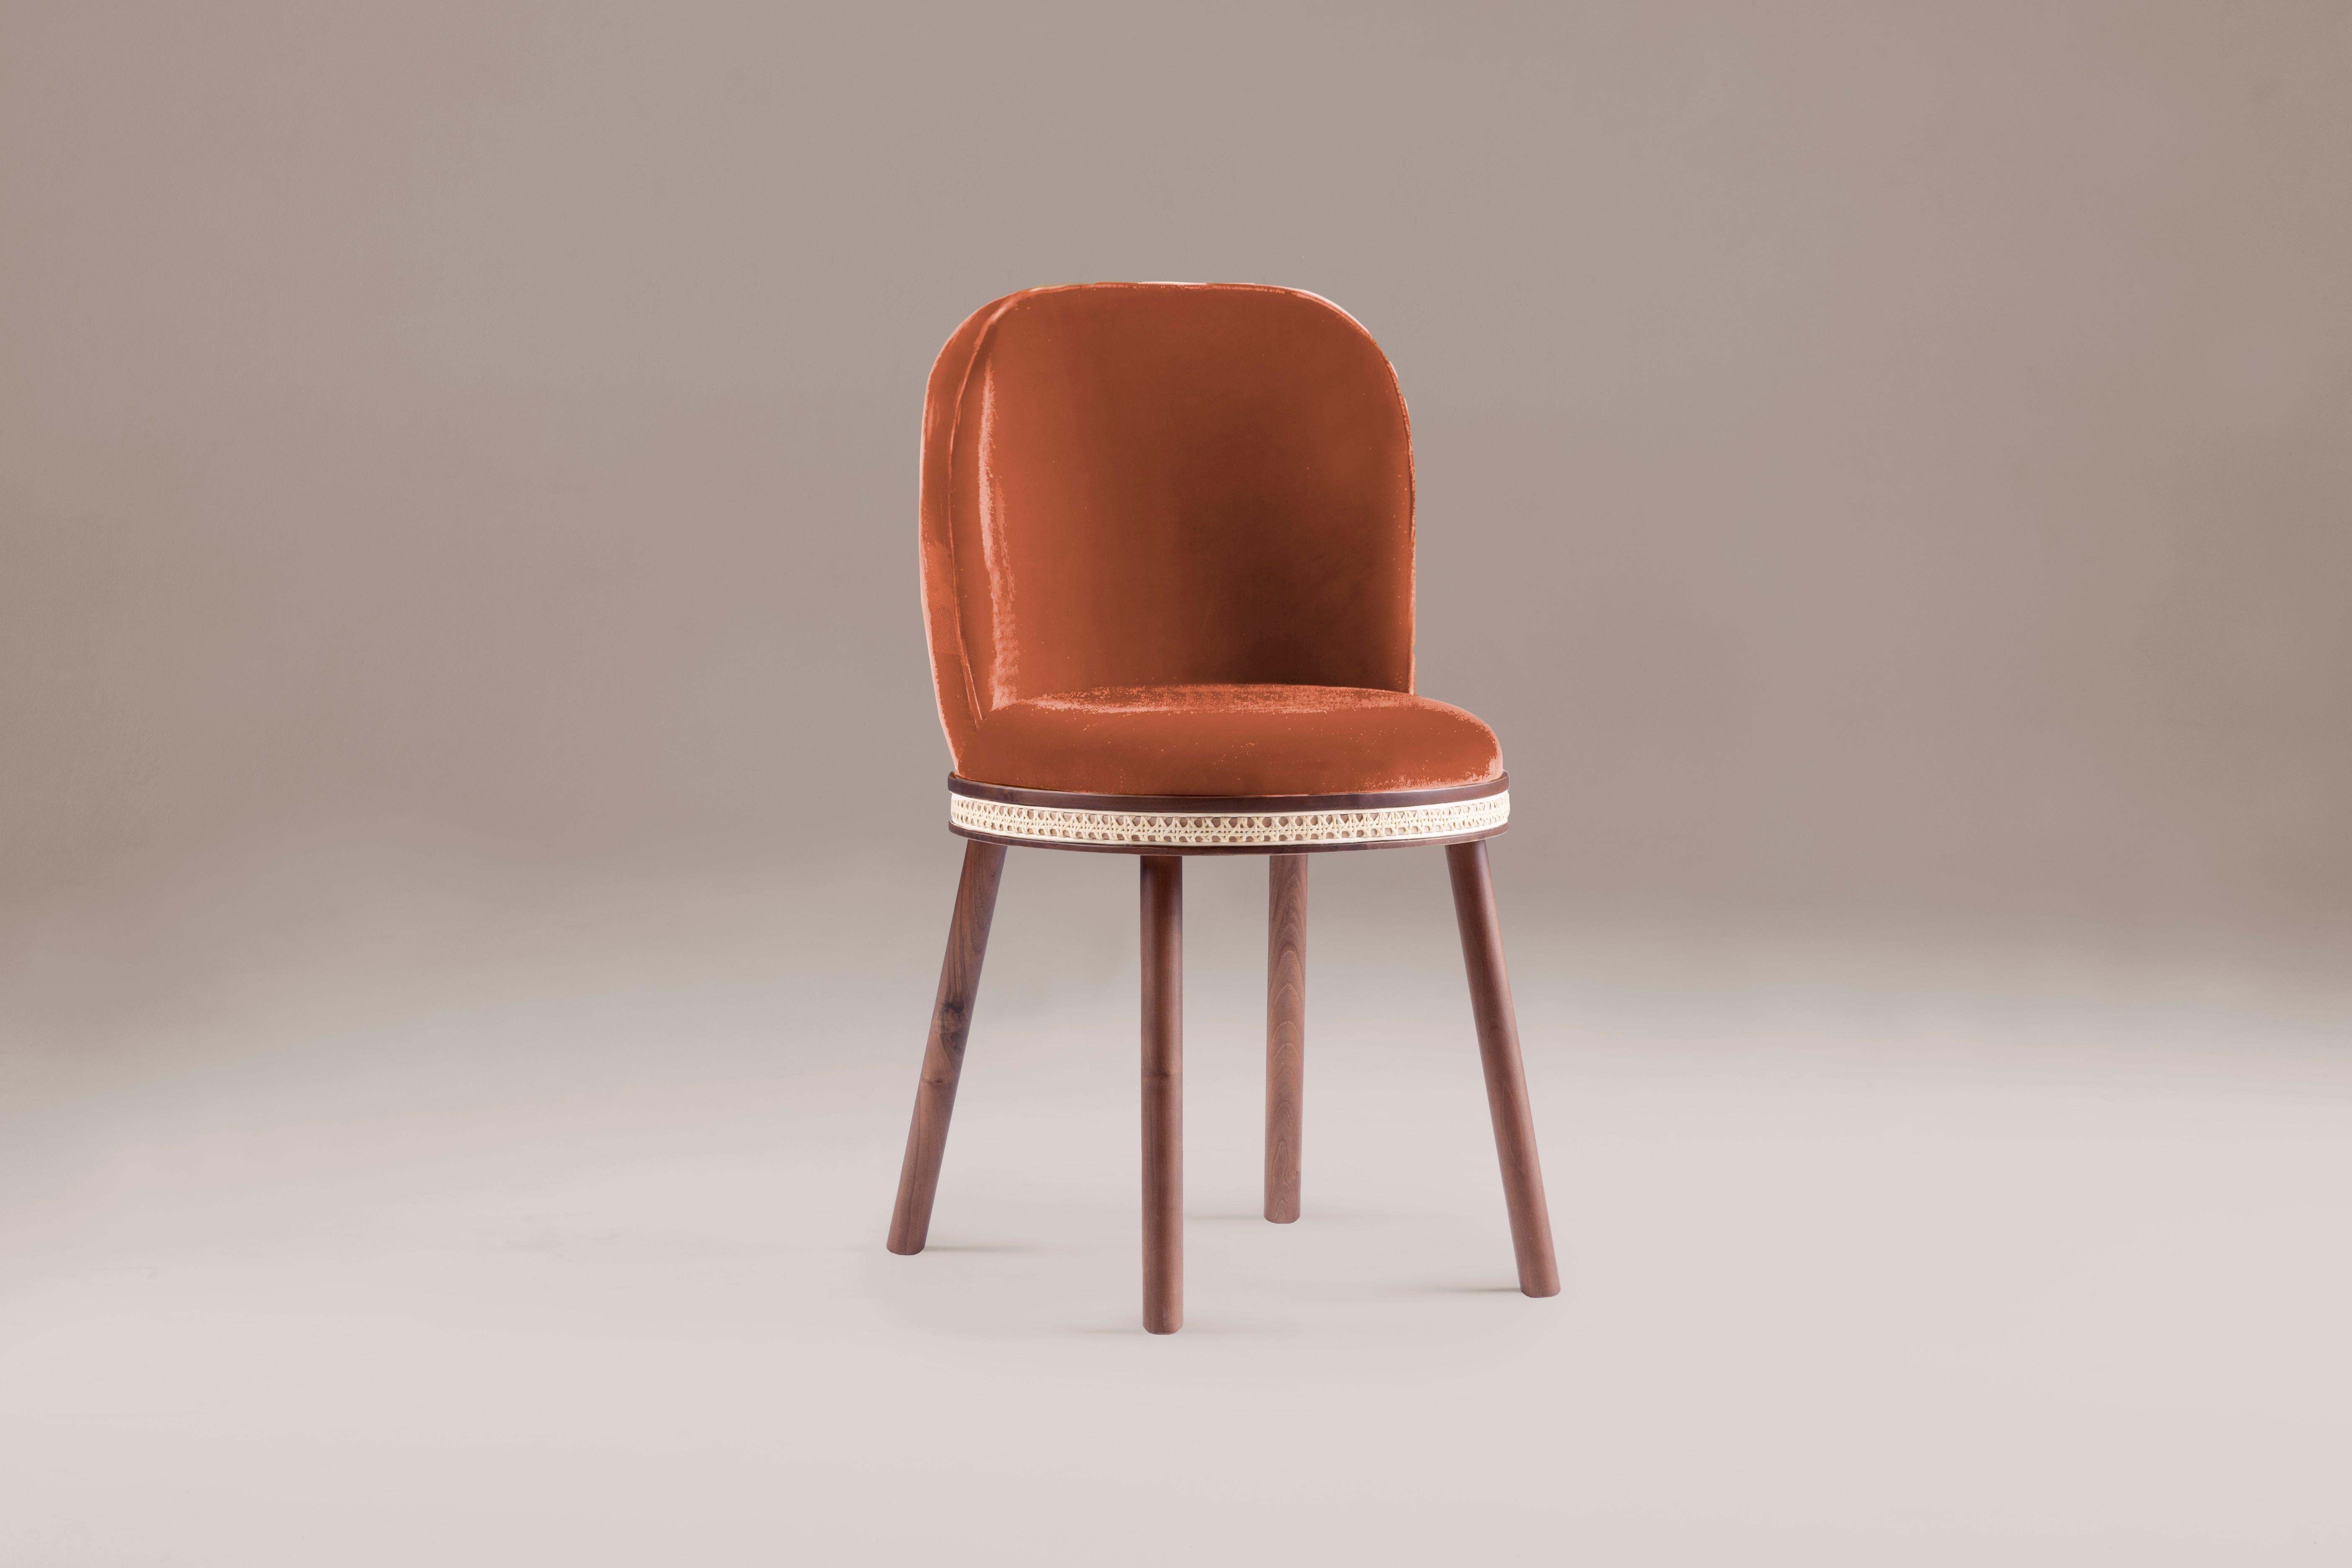 DOOQ Mid-Century Modern Dinning Chair Alma Terrakotta Samt, Walnussholz Beine

In einem Stück, das klassische und moderne Ästhetik verbindet, finden wir eine gewisse harmonische Anmut, gepaart mit einer intimen Üppigkeit, die Sie umarmen kann und